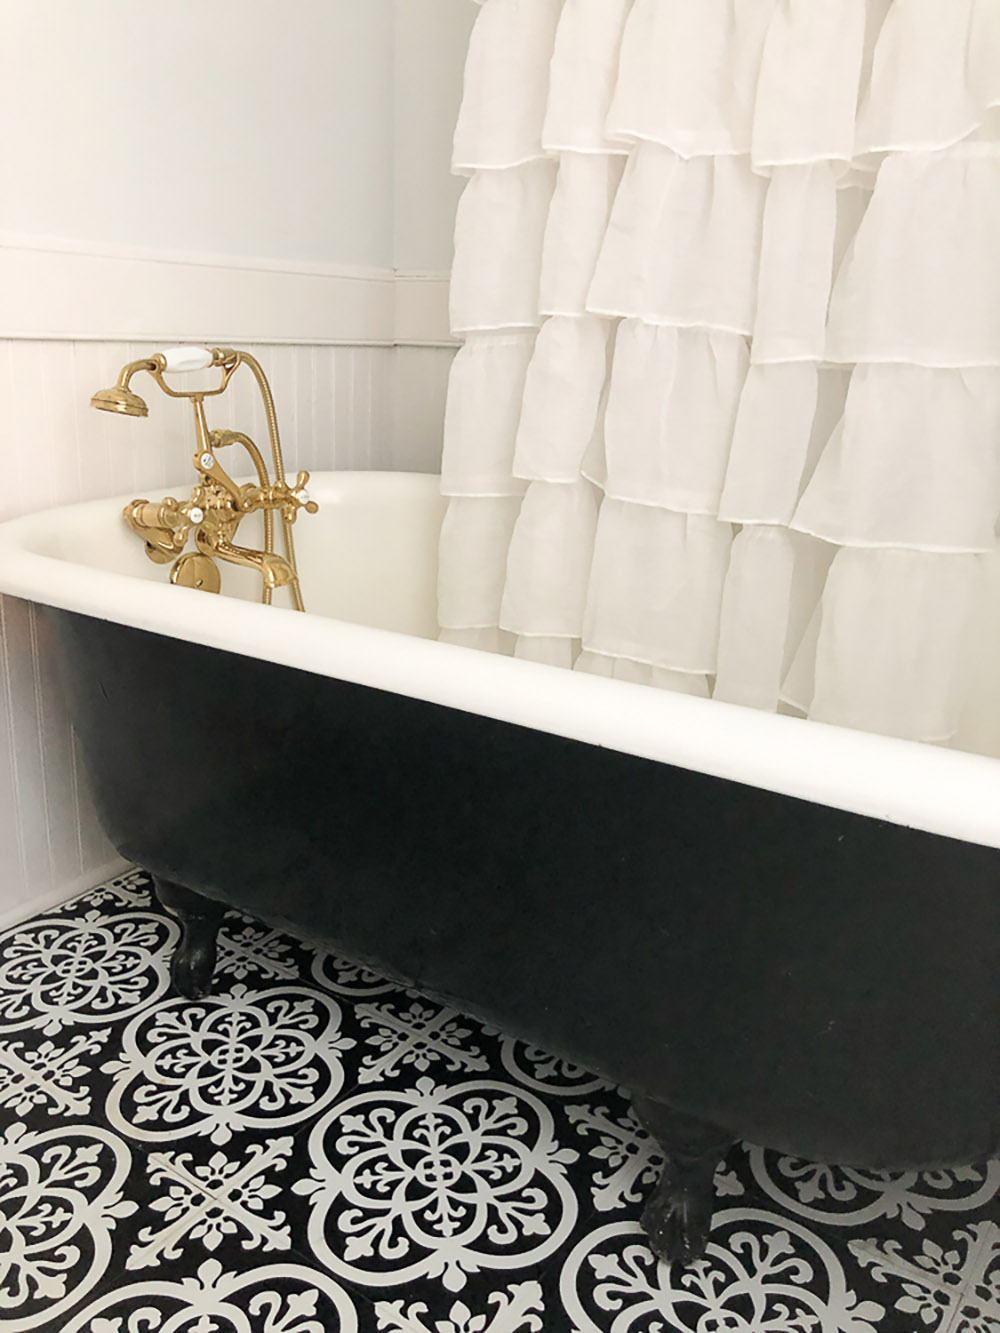 A bathroom with a decorative tile floor and a clawfoot bathtub.